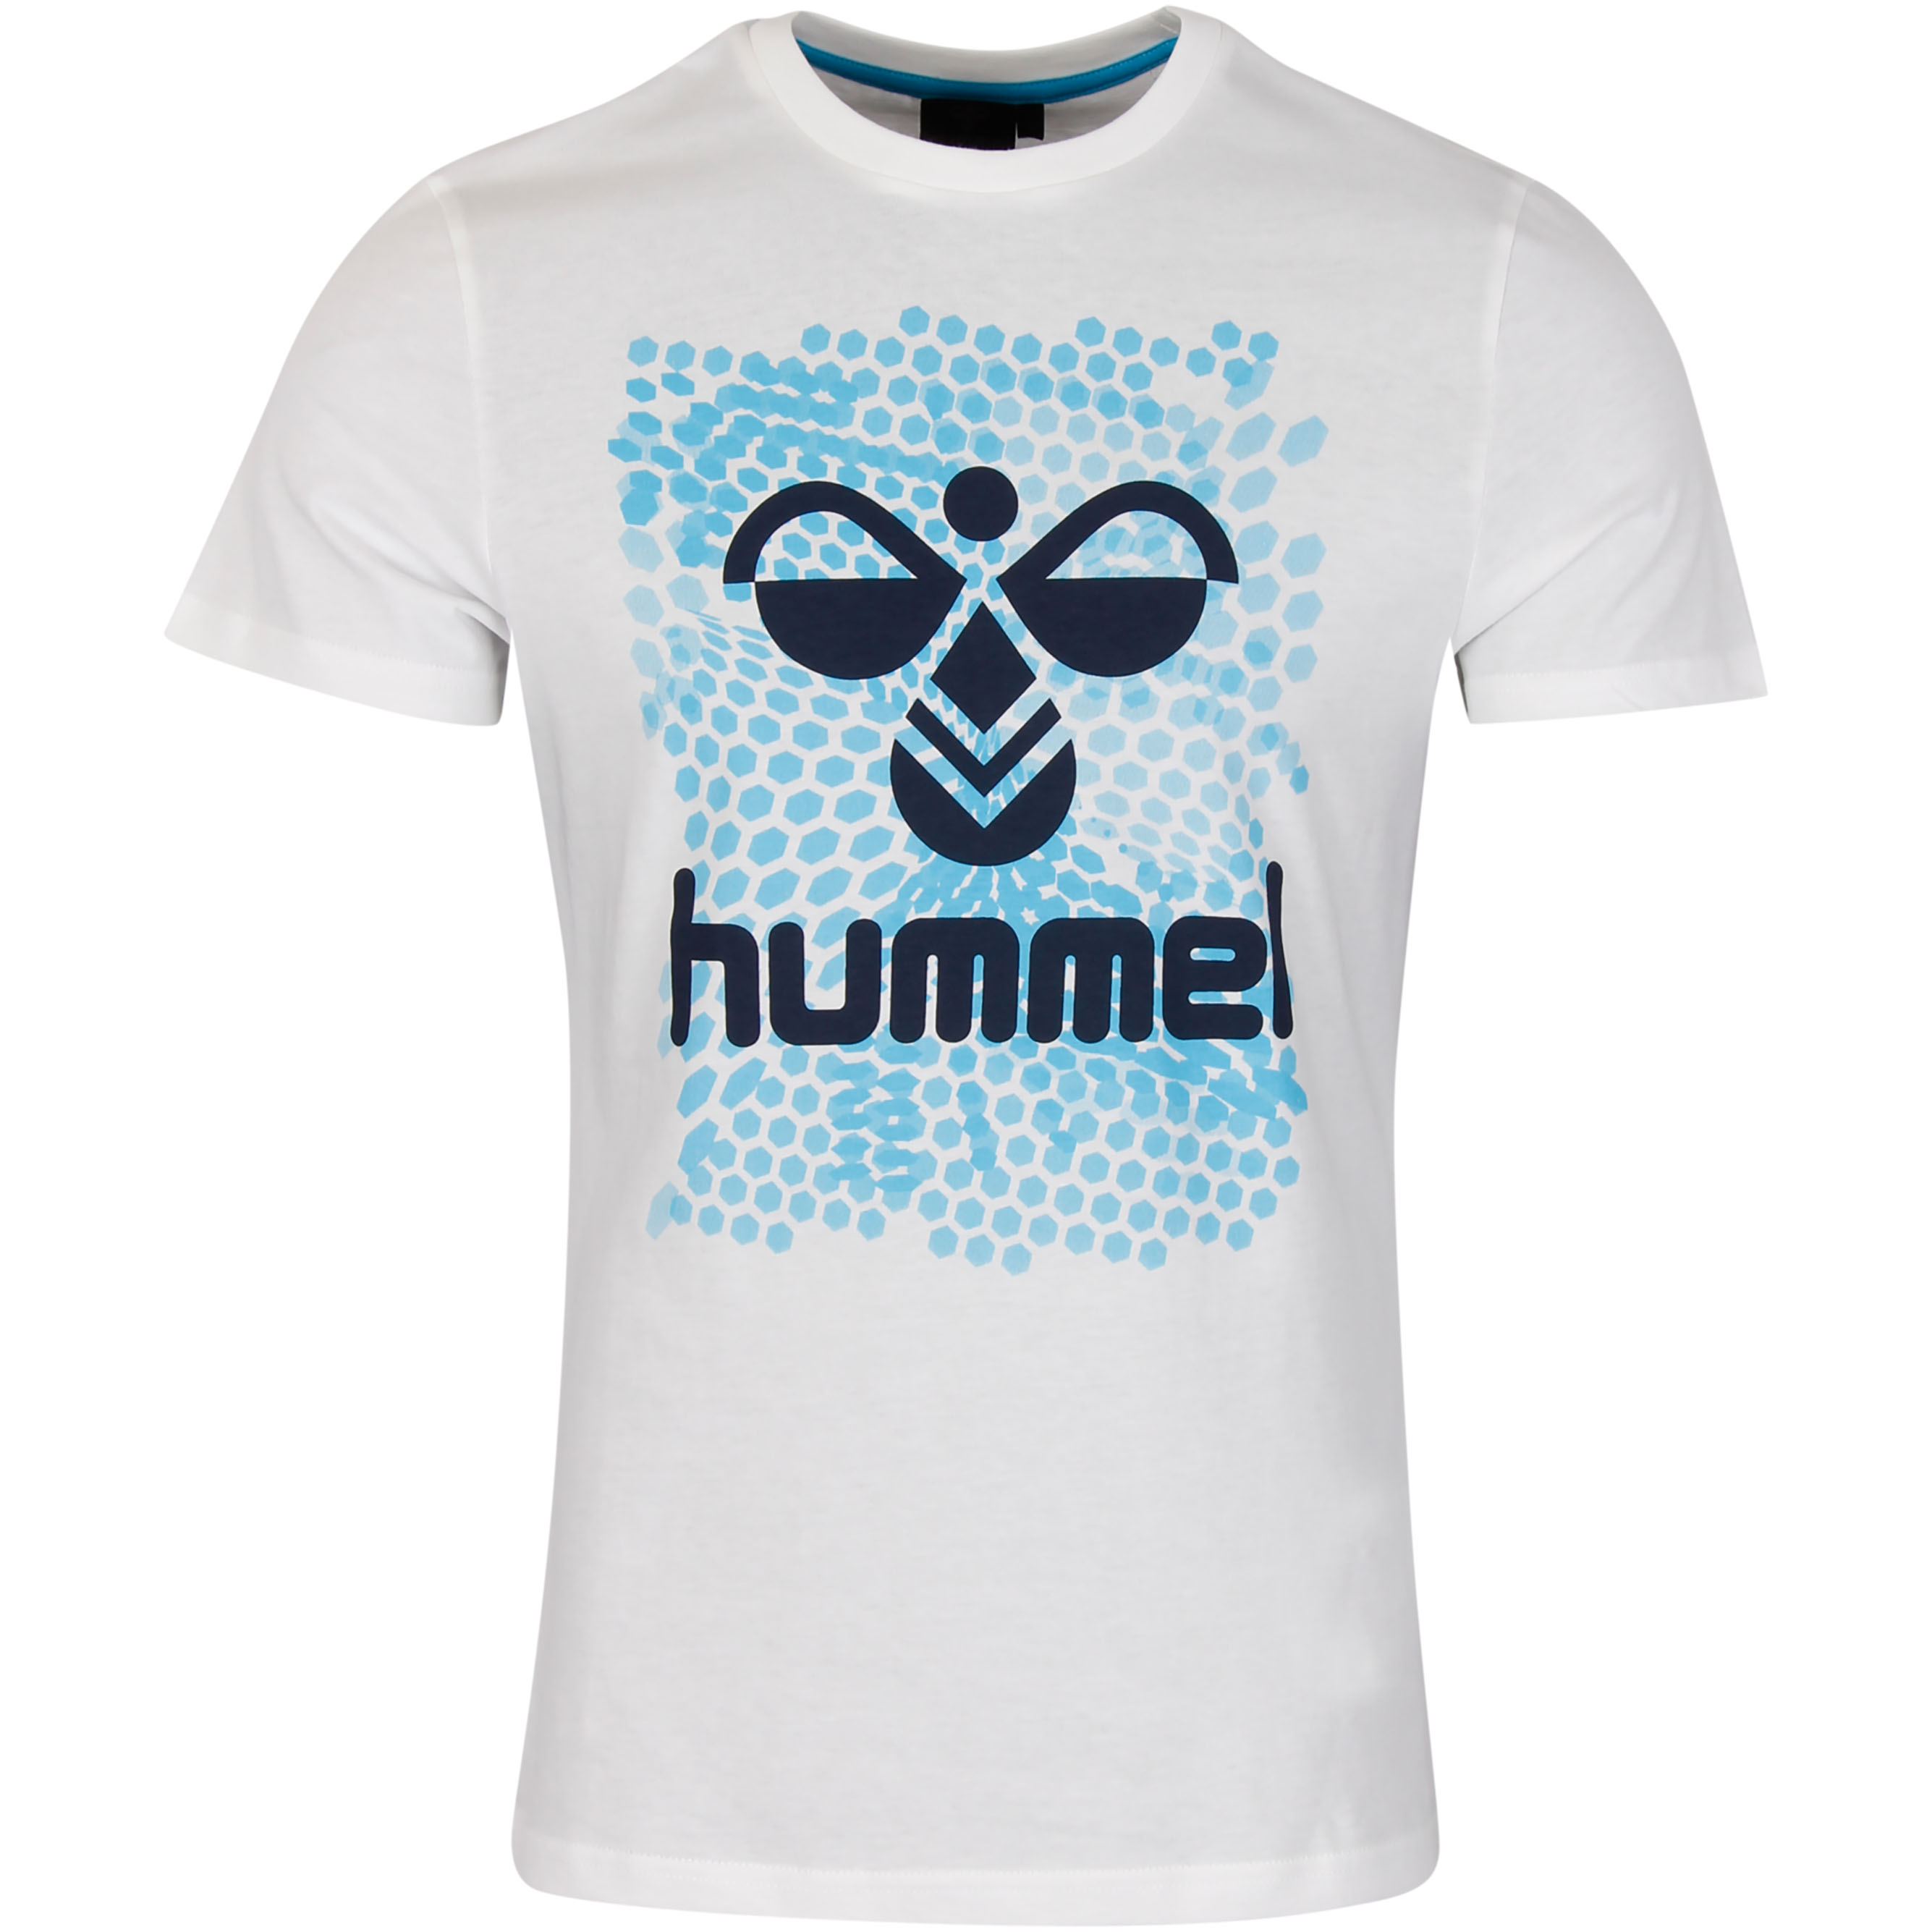 | SW10243 T-Shirt Weiß/Blau, S Hexagon Gr. Hummel -